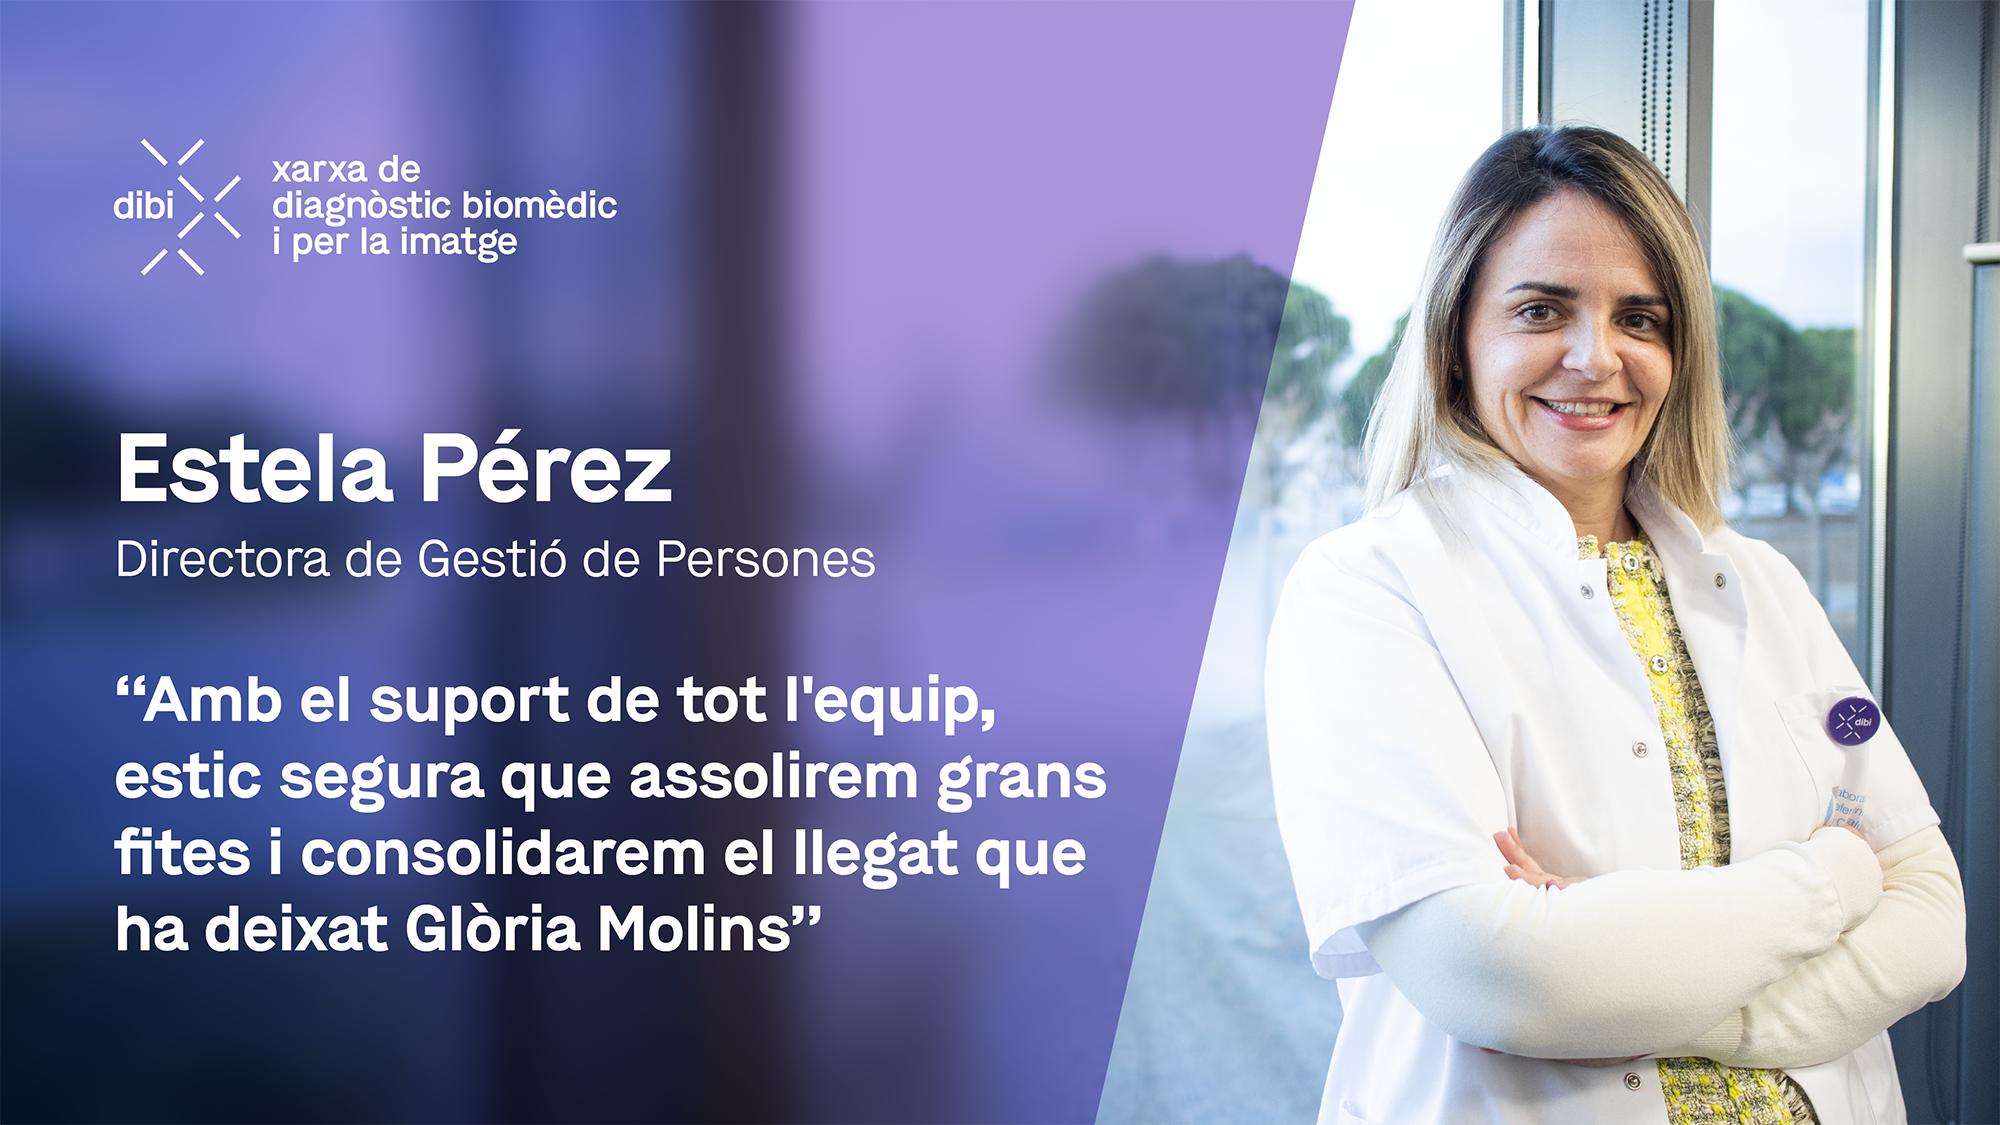 Estela Pérez, nova directora de Gestió de Persones